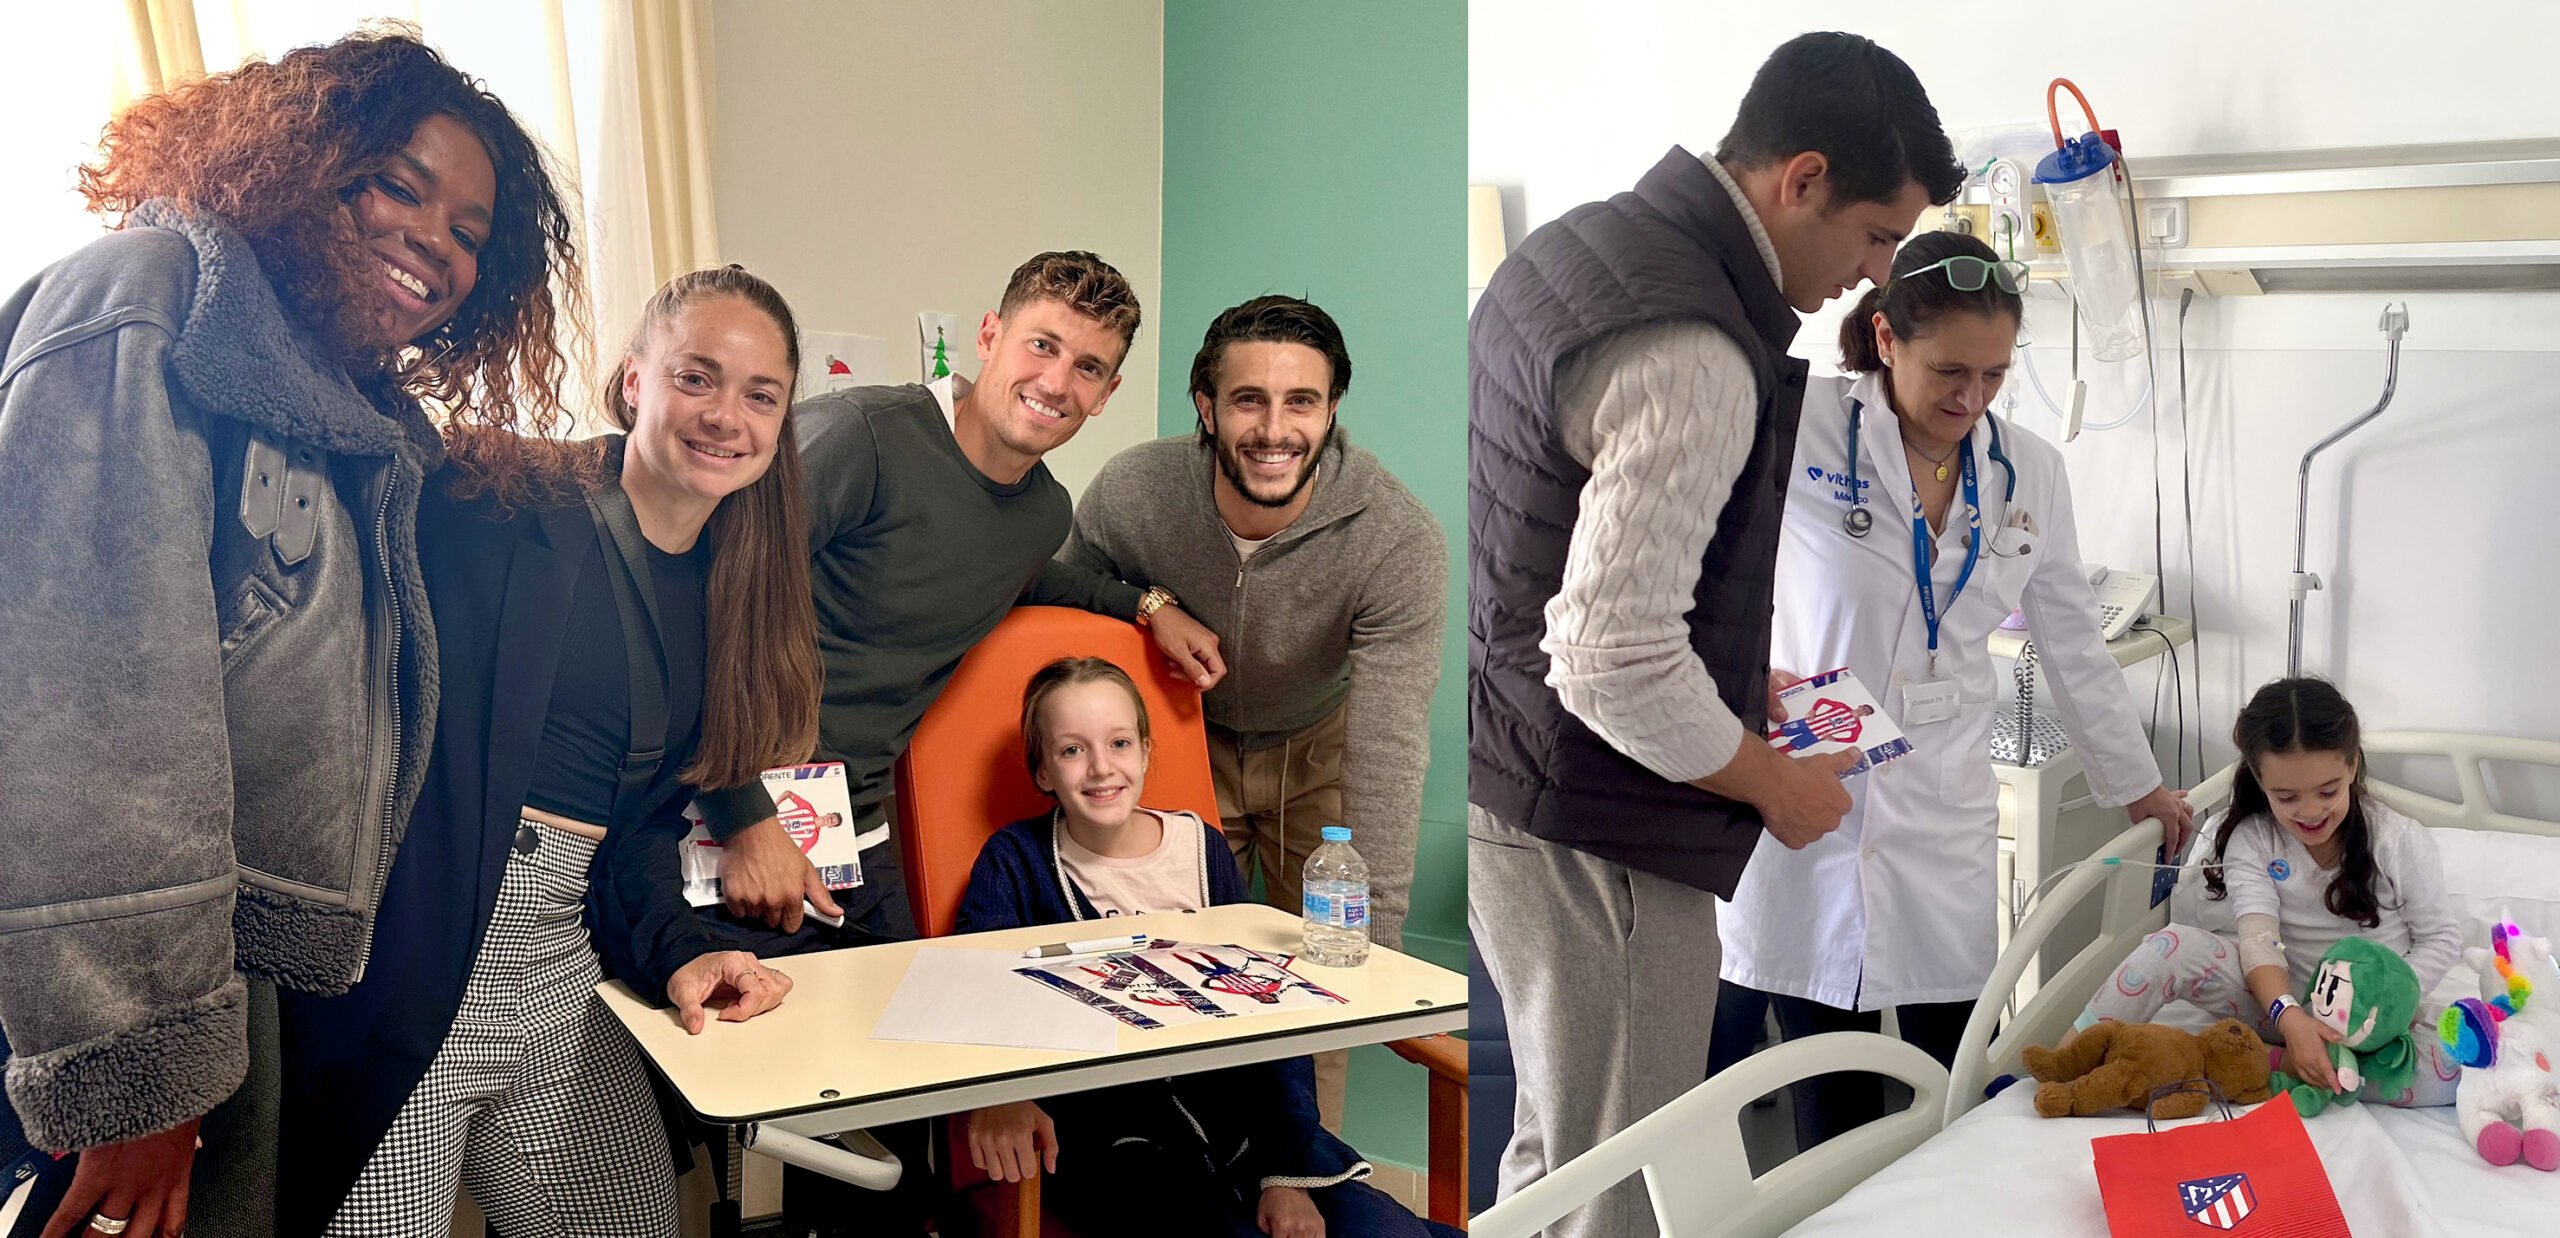 El Atlético de Madrid visita a los niños hospitalizados en Vithas, servicio médico oficial del club